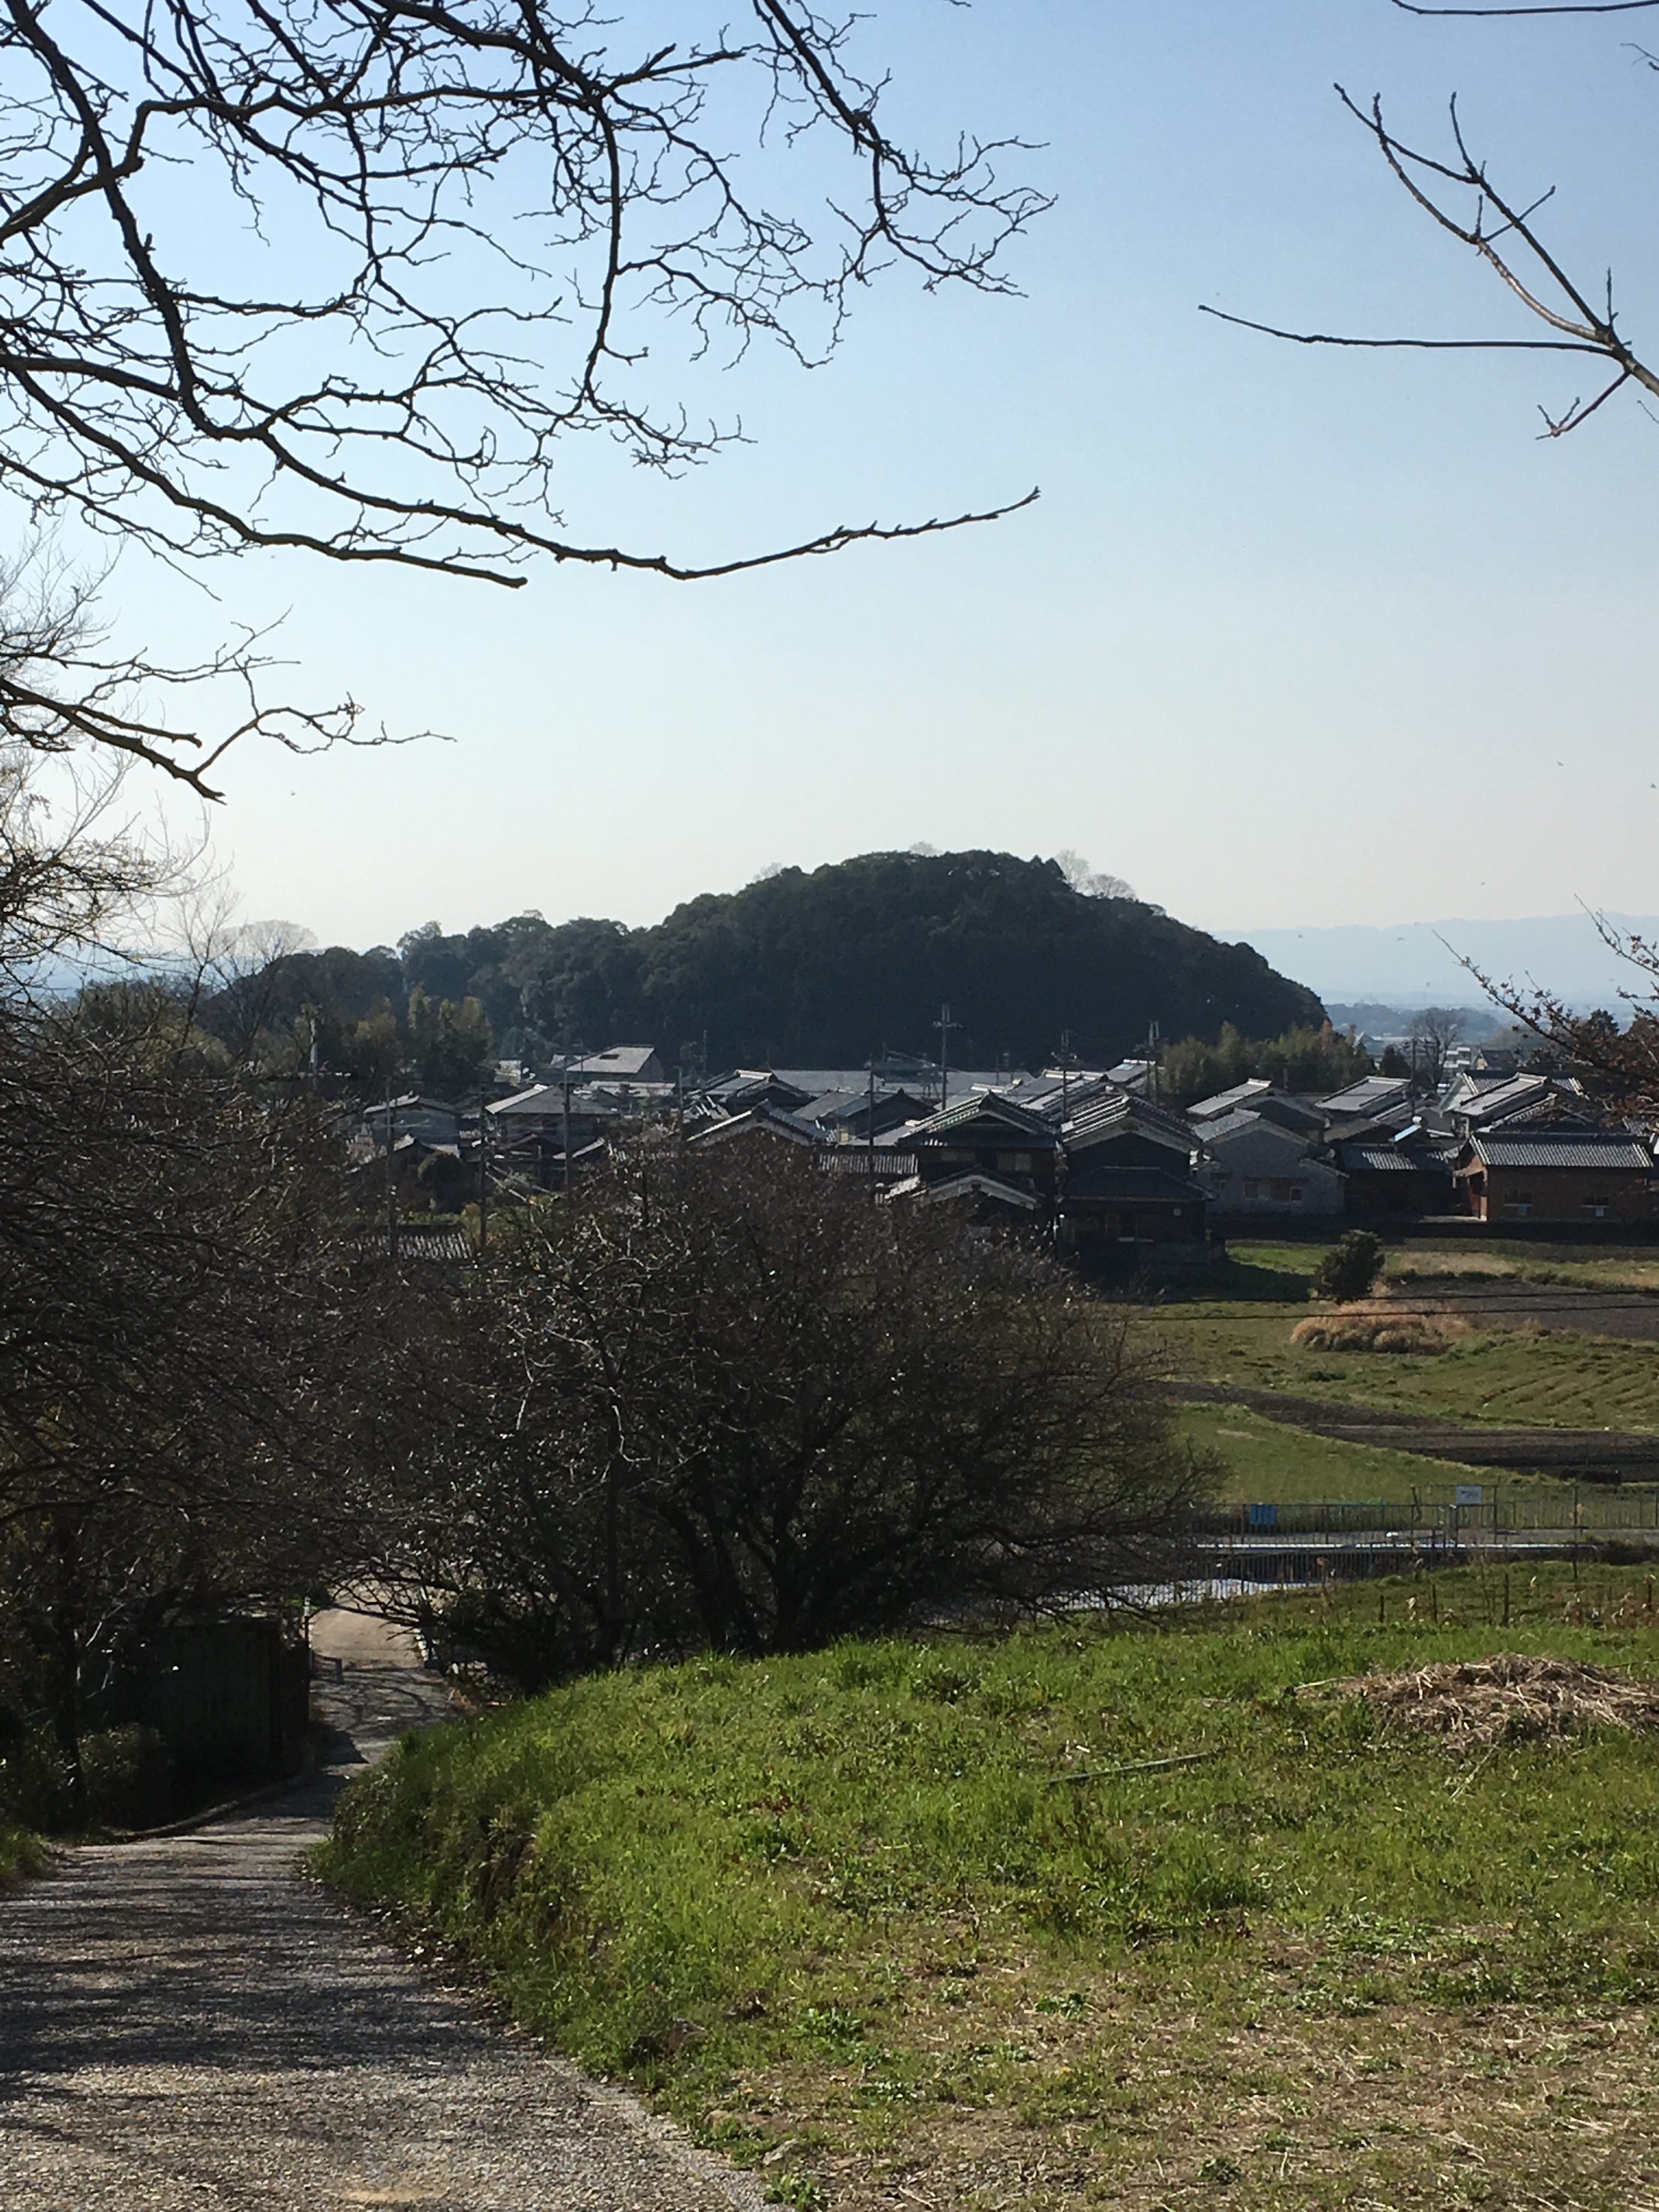 Hashihaka Kofun in the distance in Nara, Japan